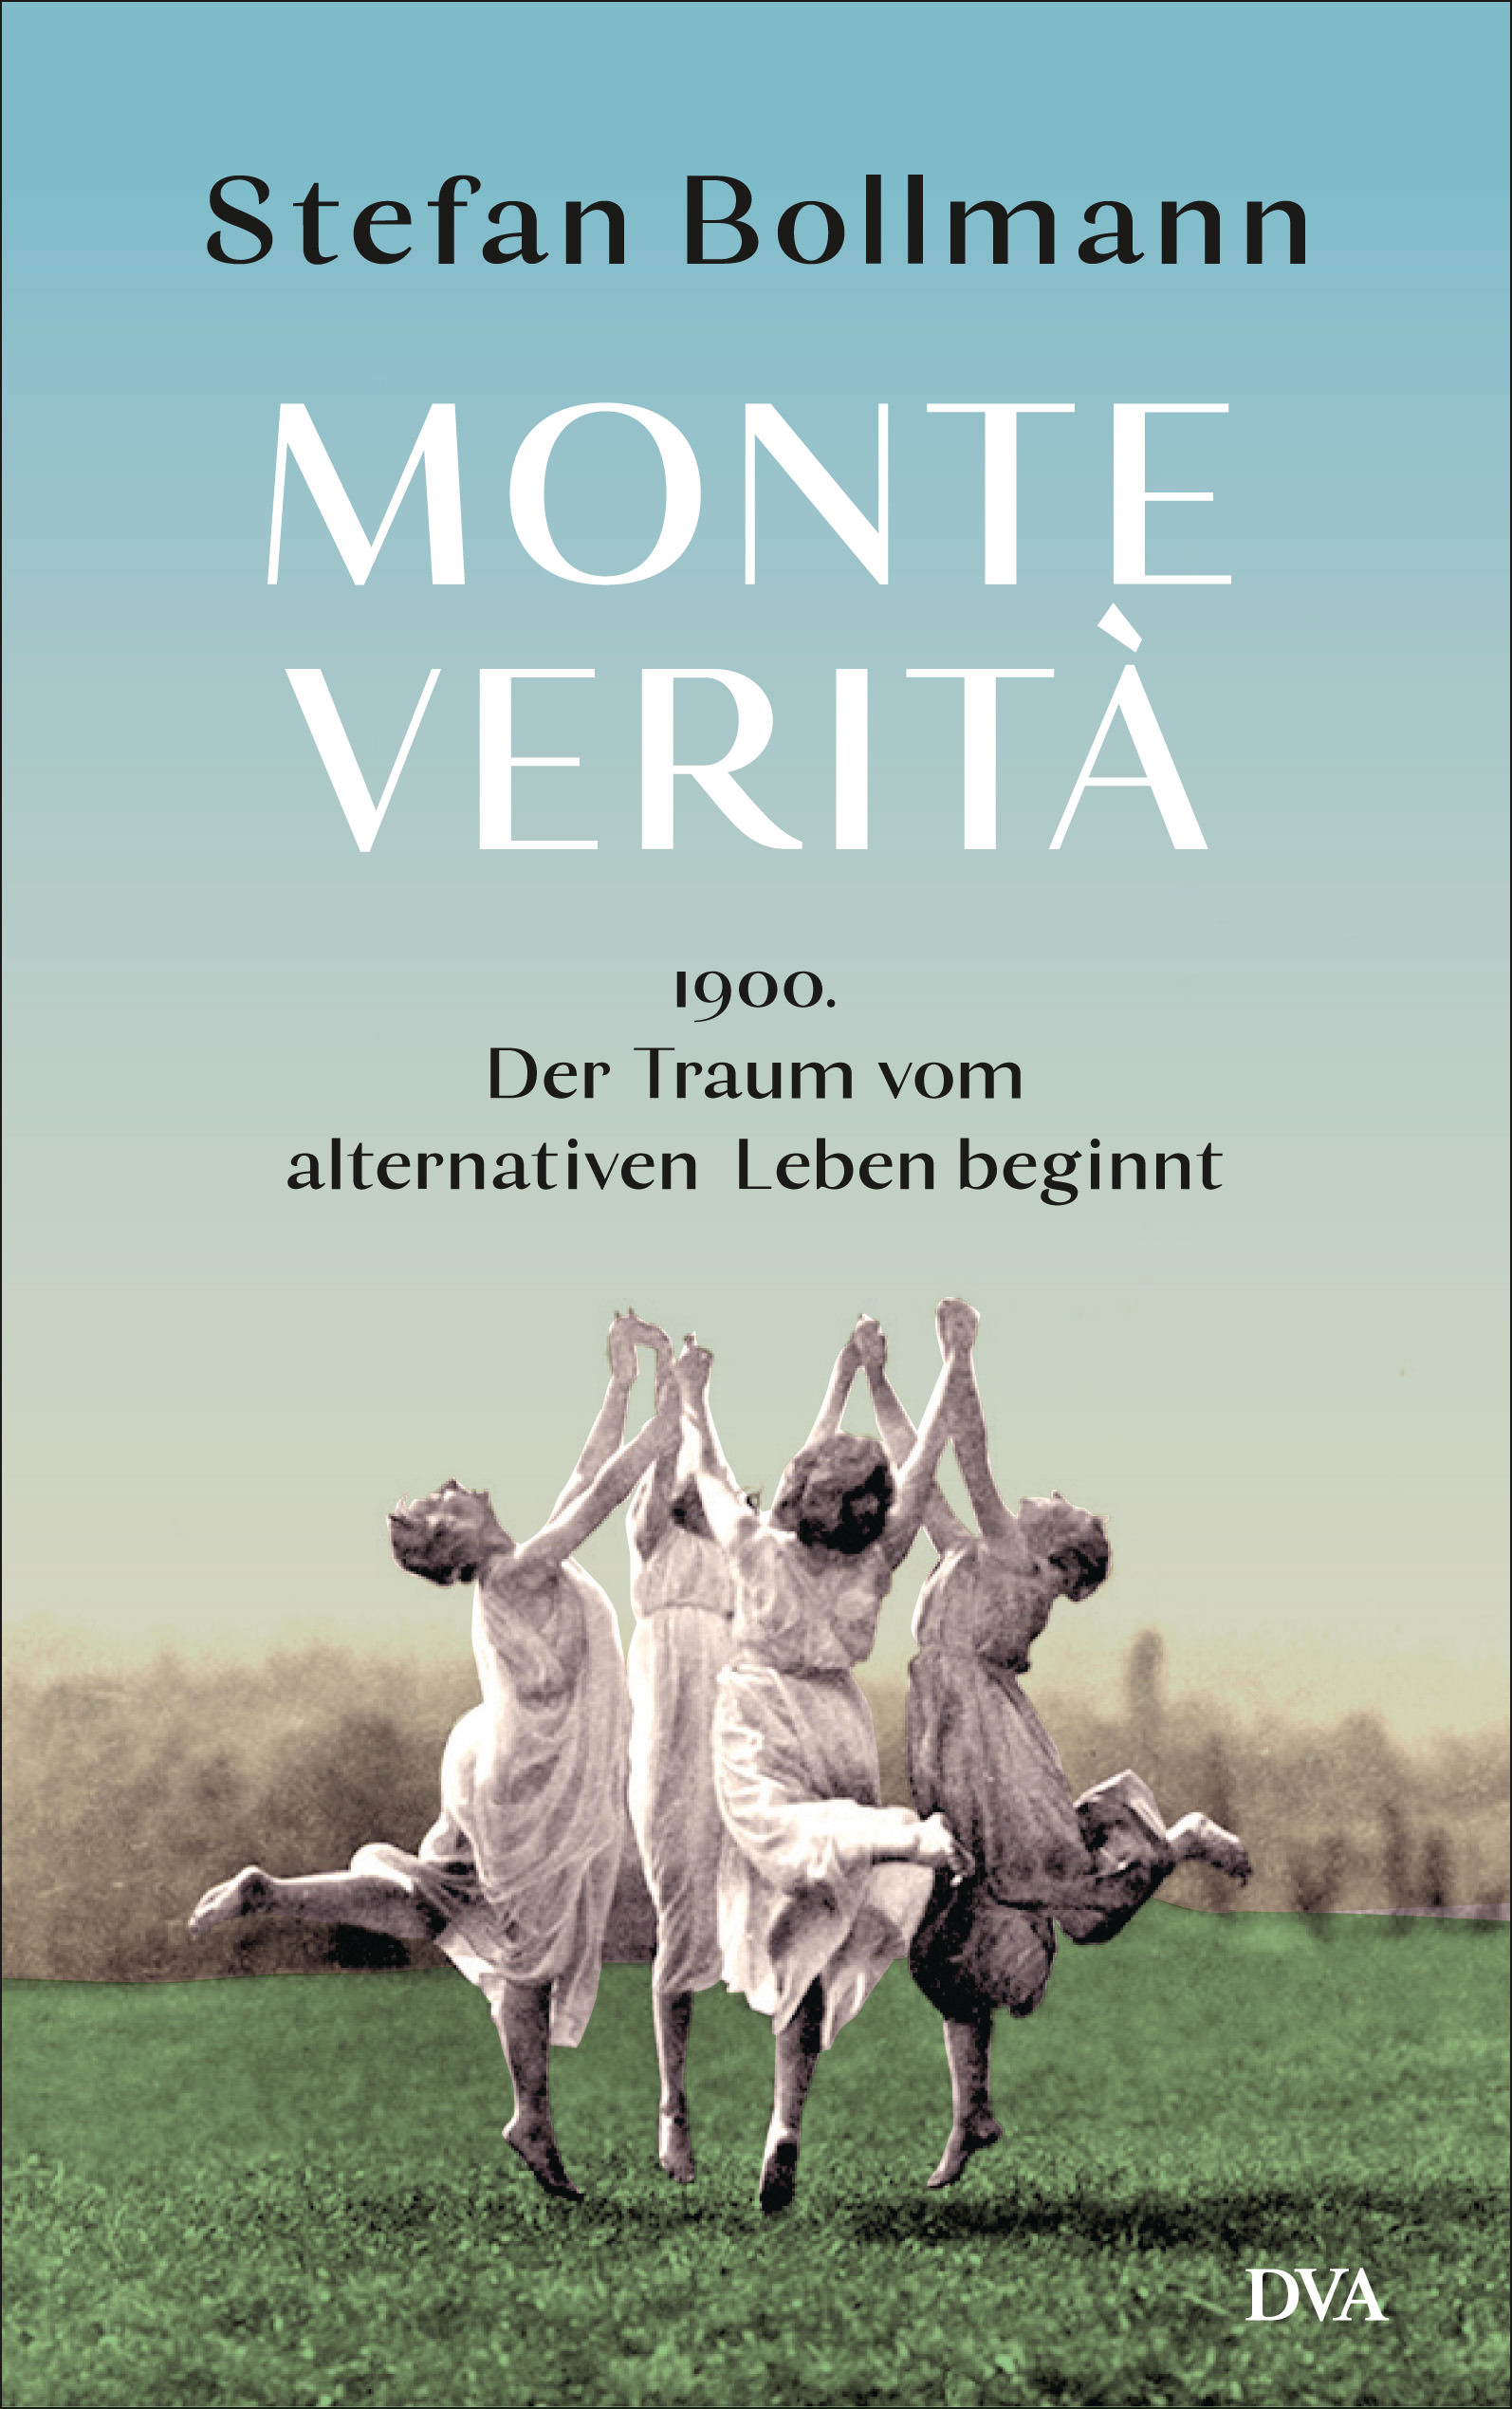 Buchcover: Stefan Bollmann: Monte Varità. DVA